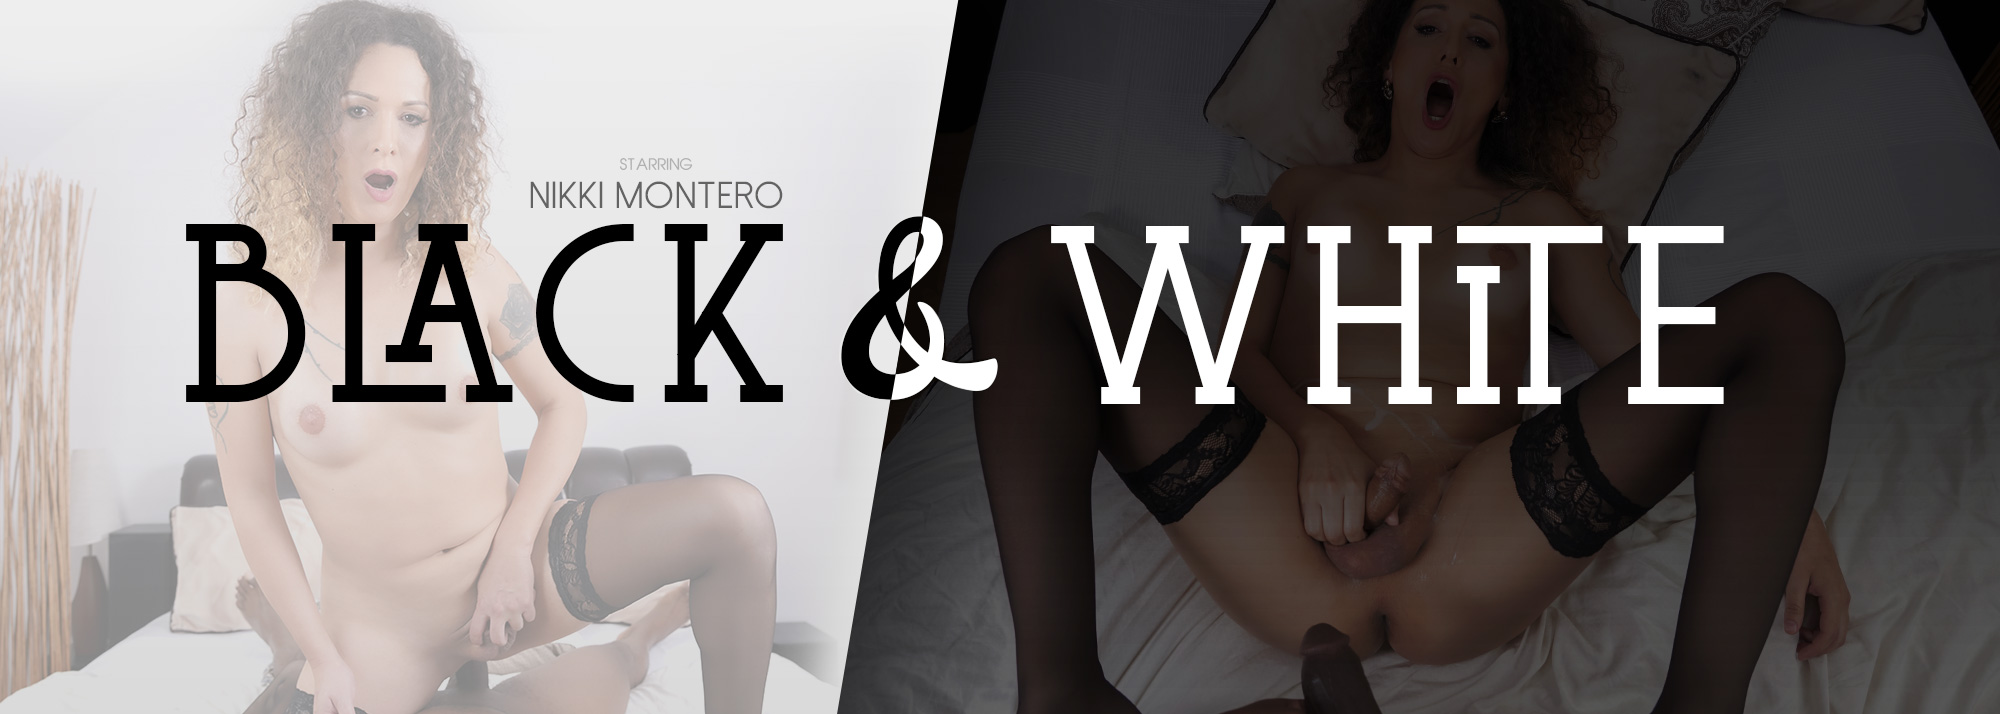 Black and White - VR Porn Video, Starring: Nikki Montero VR